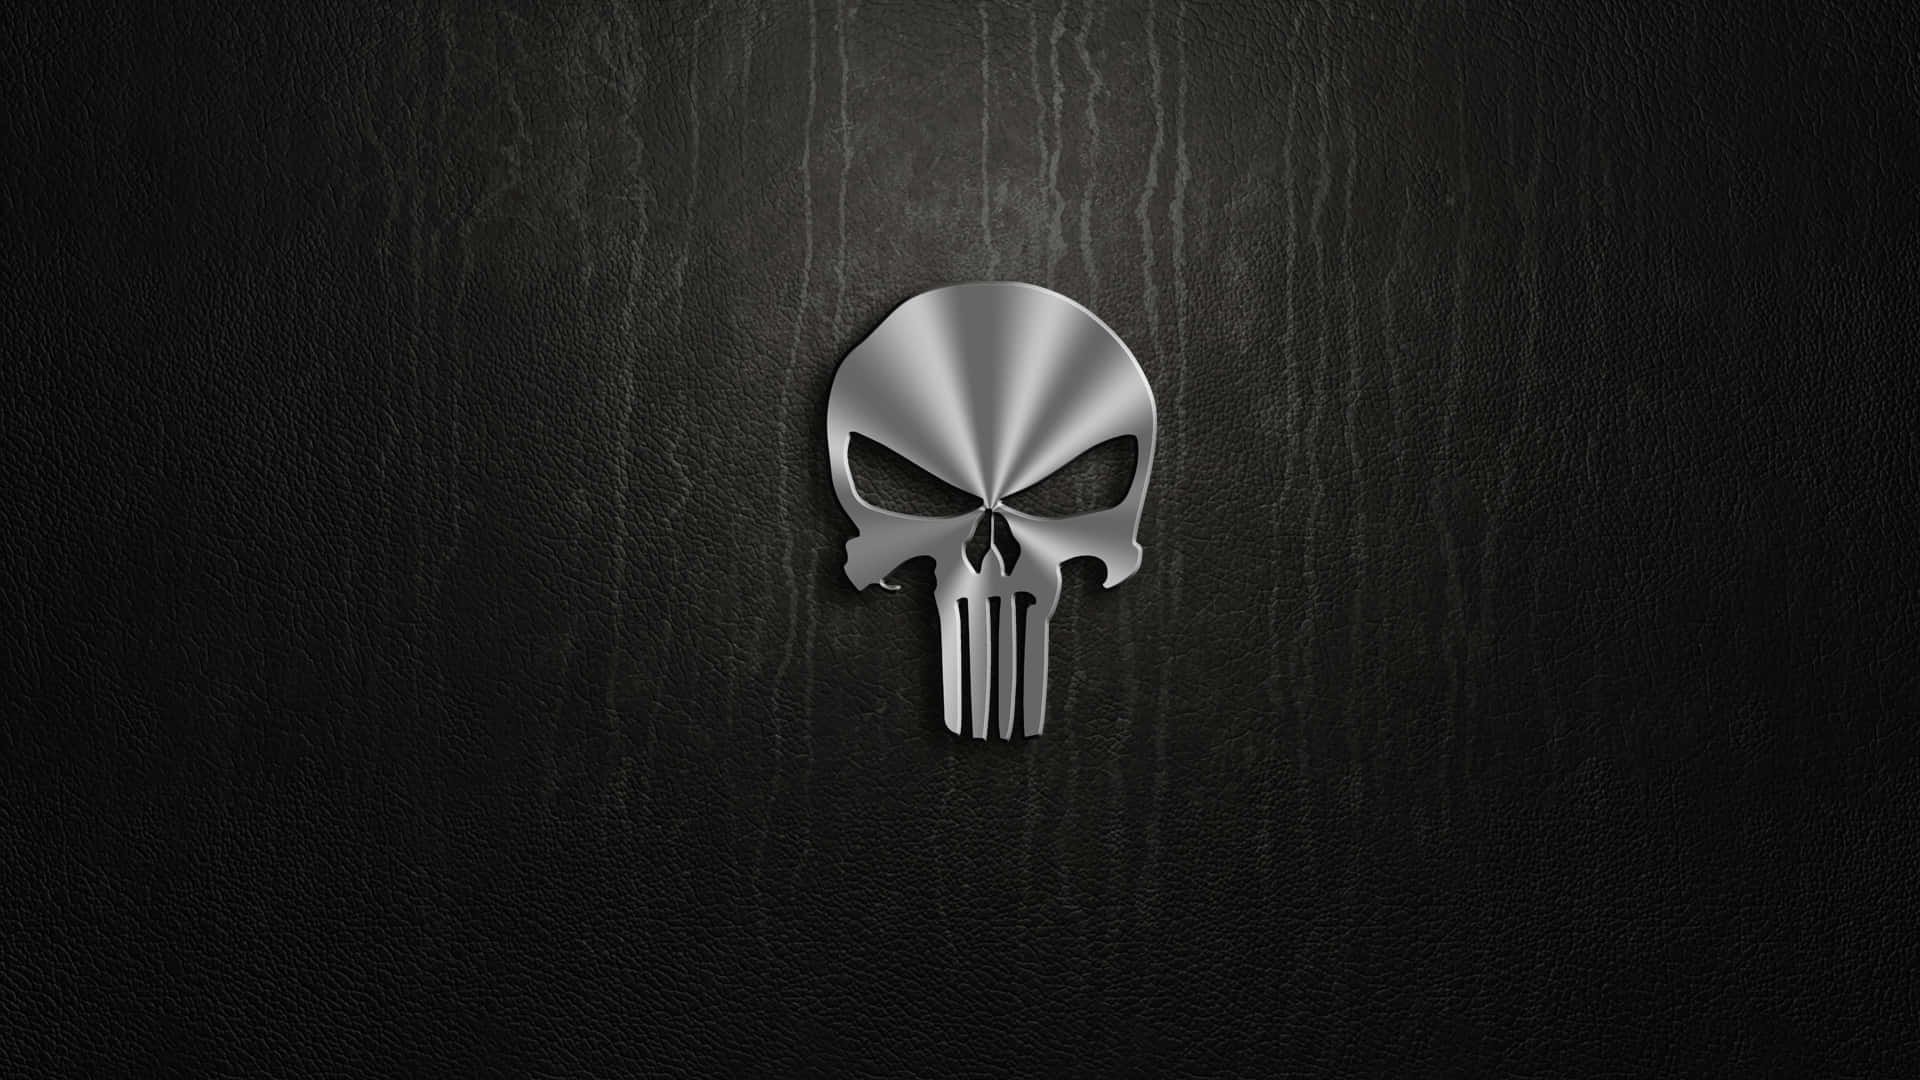 Skræm kriminelle i dit eget hjem med denne awesome Punisher Desktop-baggrund! Wallpaper